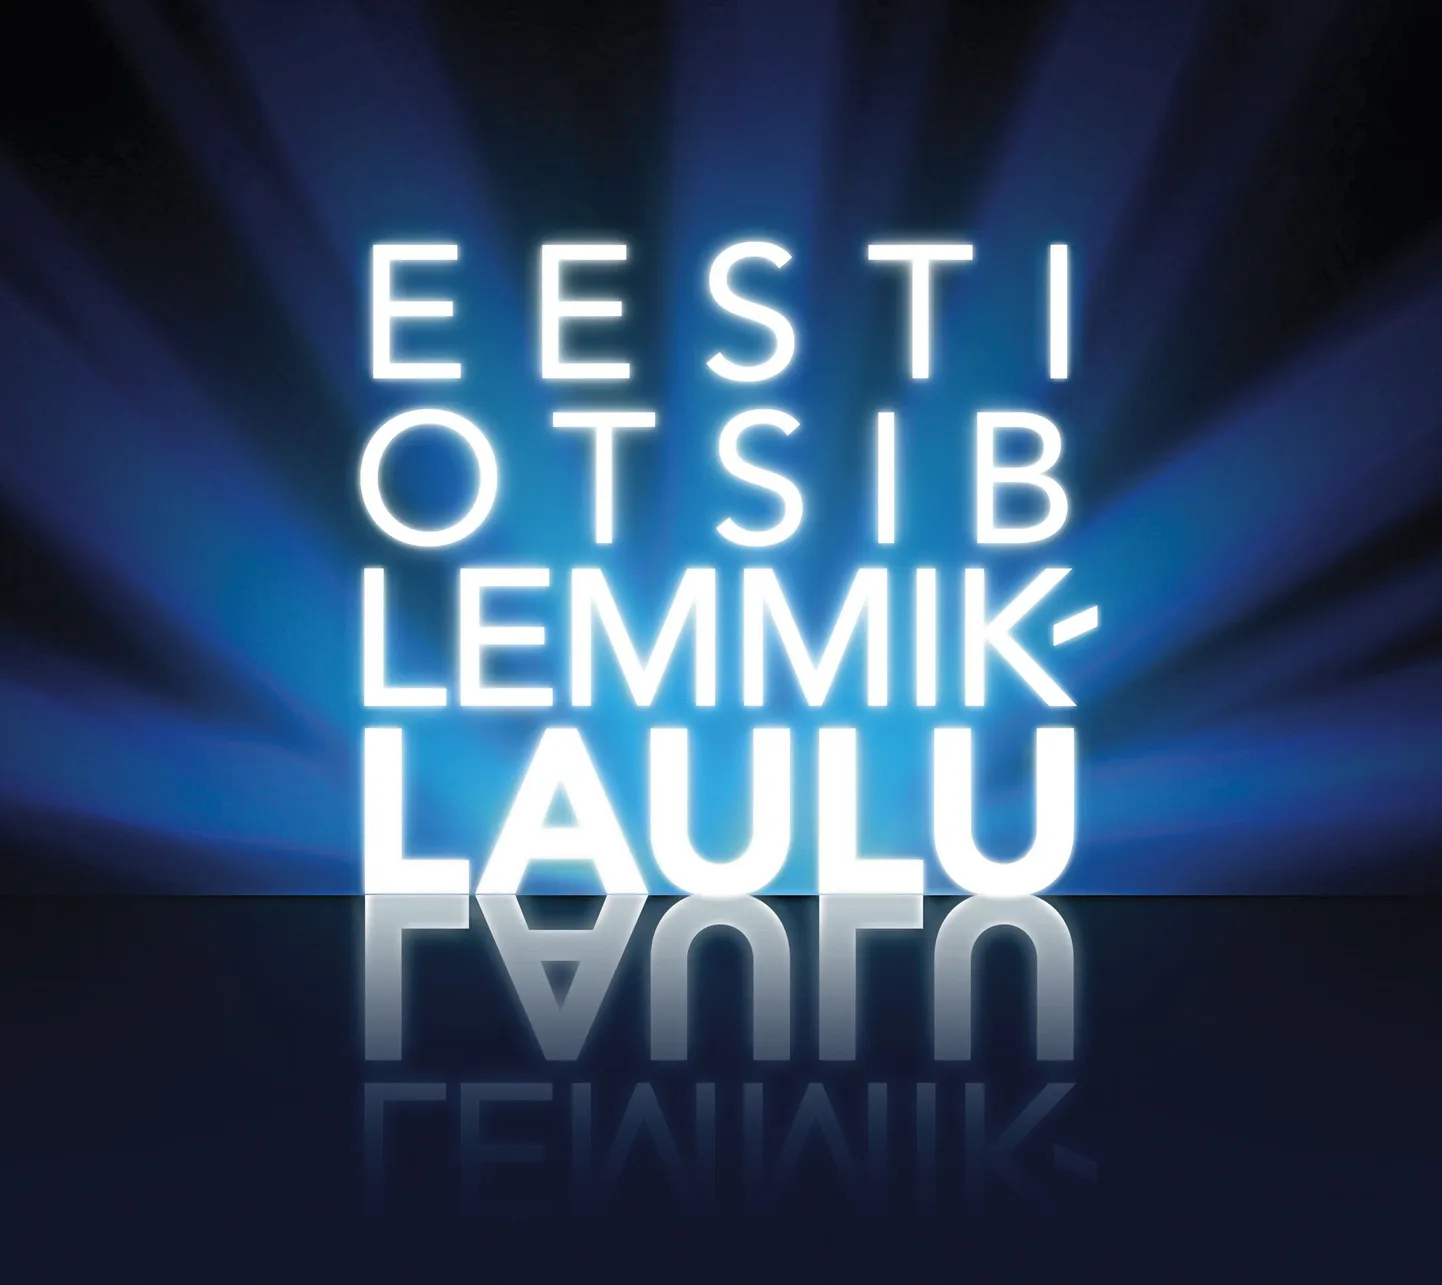 «Eesti otsib lemmiklaulu» logo